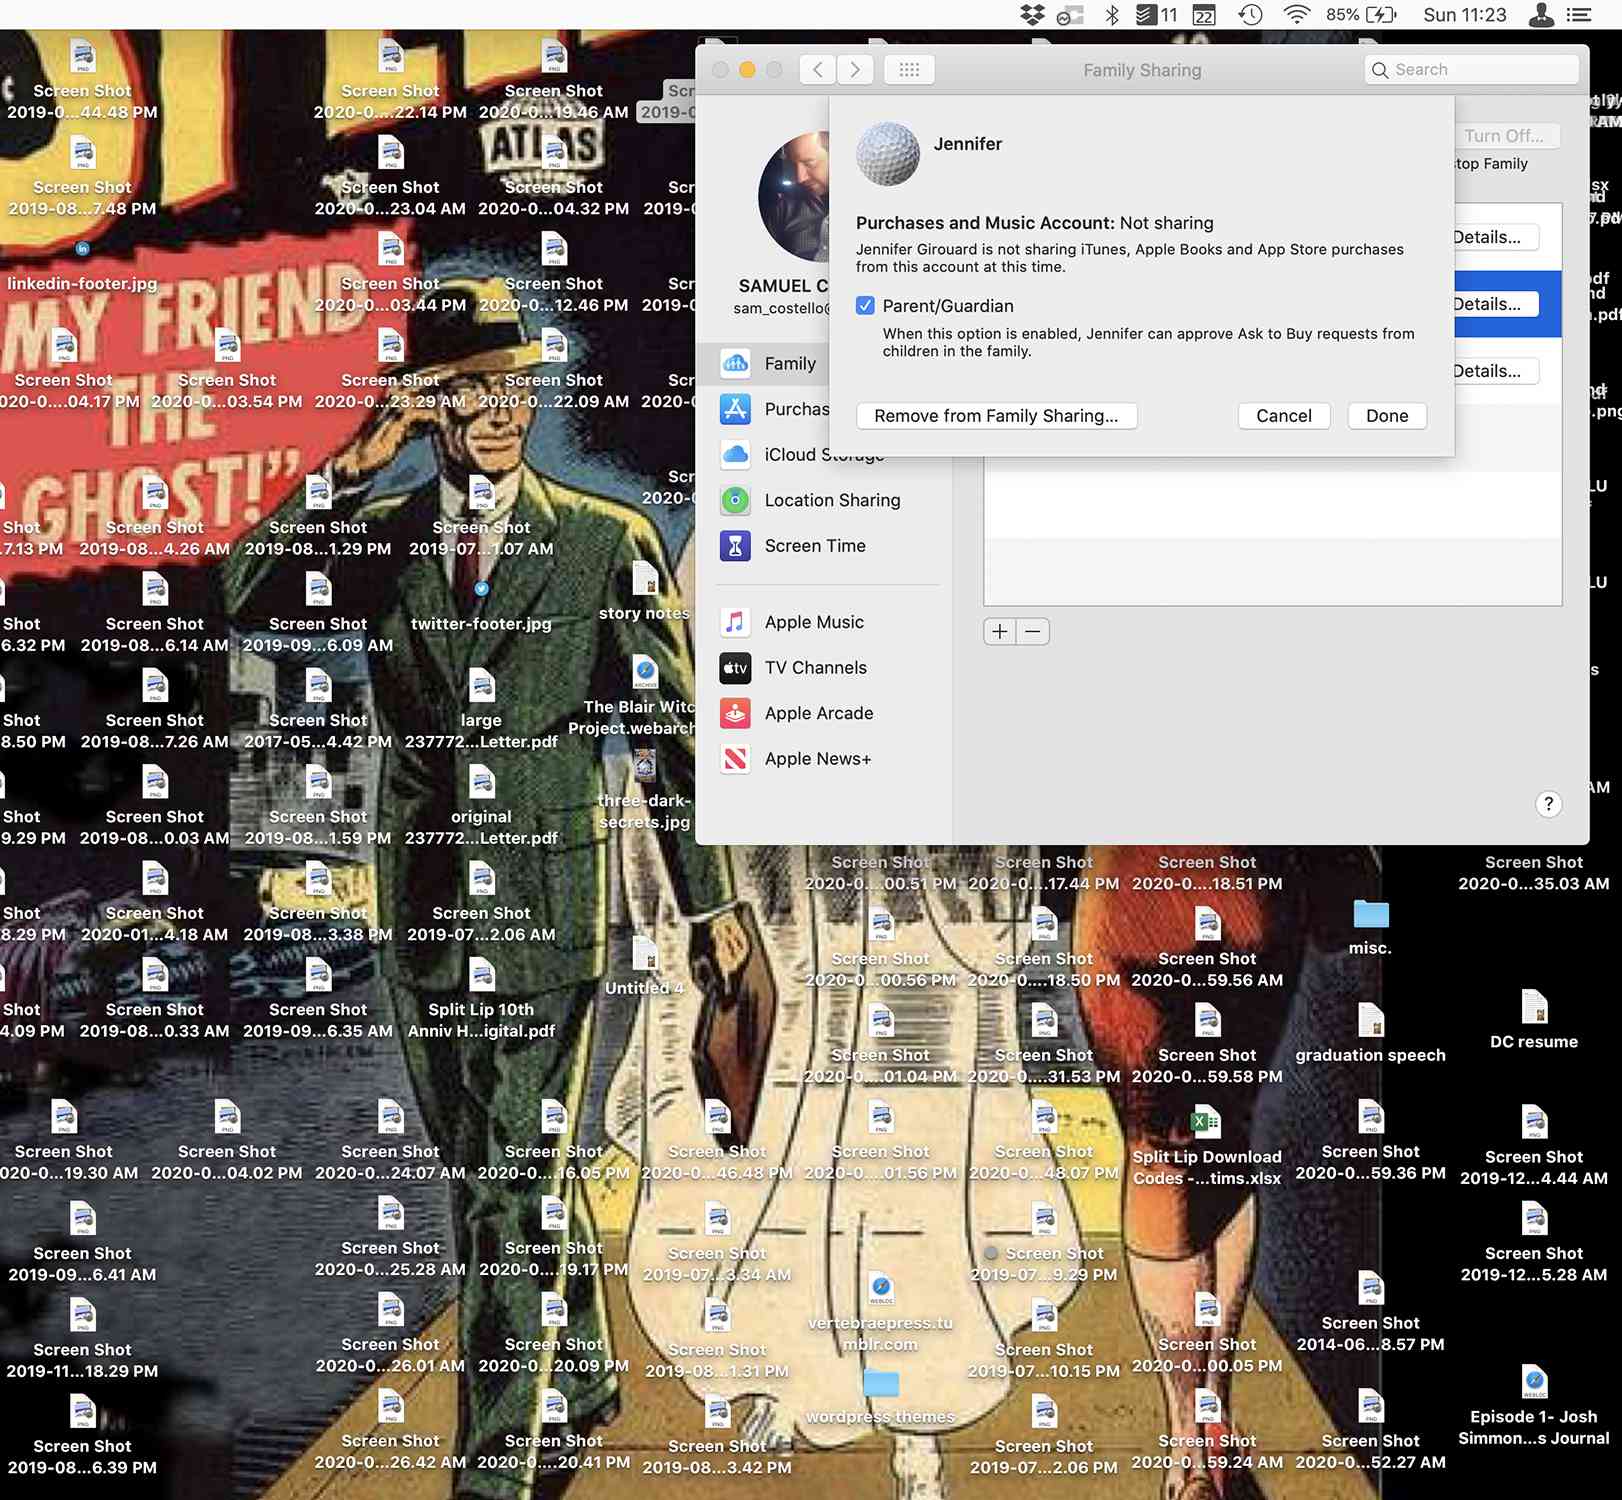 Schermafbeelding van de Mac-opties voor verwijderen uit Delen met gezin